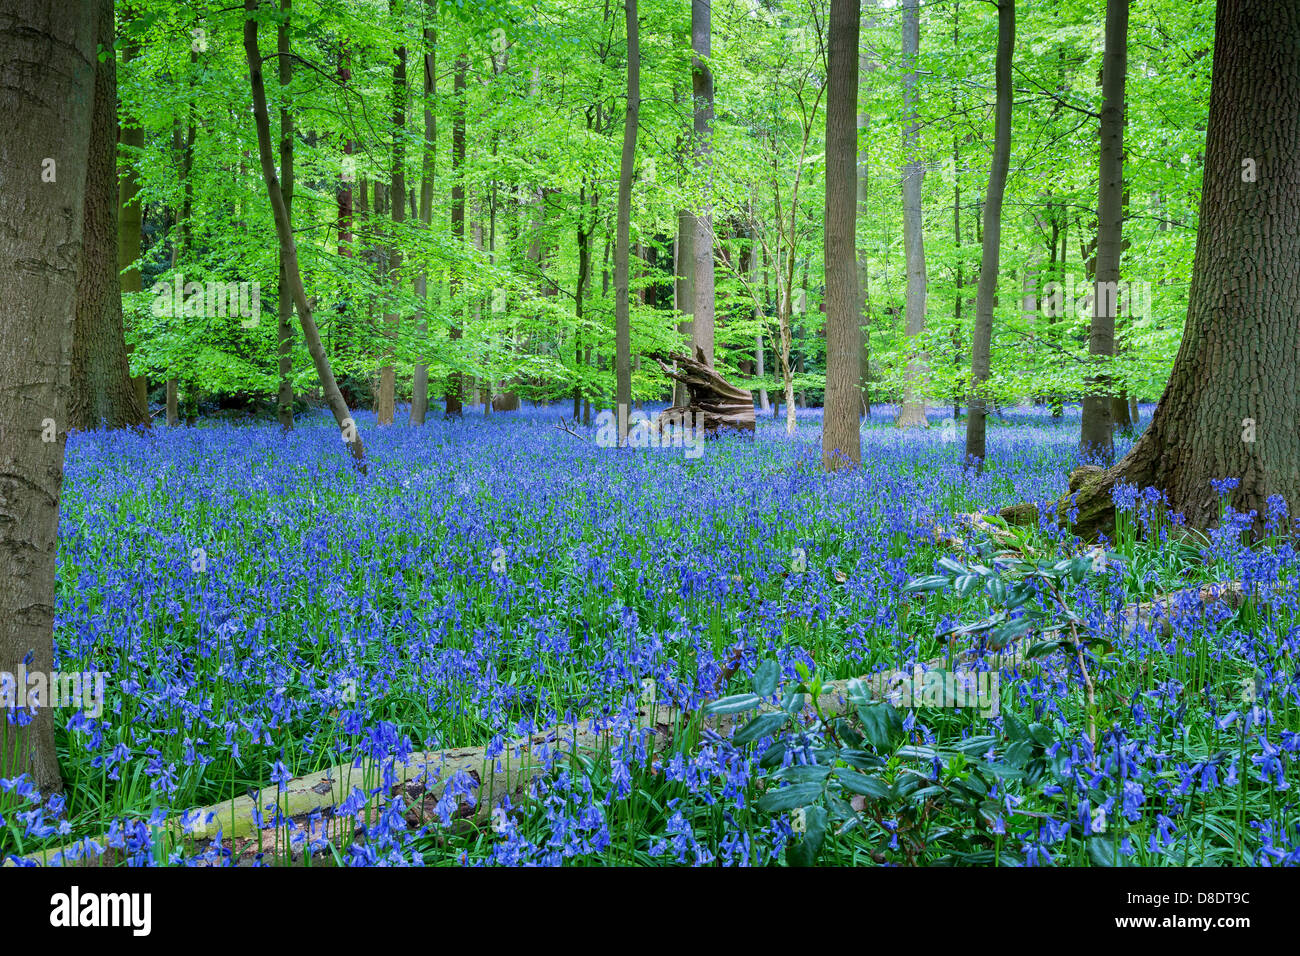 Carpet of Bluebells in woodland, Buckinghamshire, UK, England Stock Photo